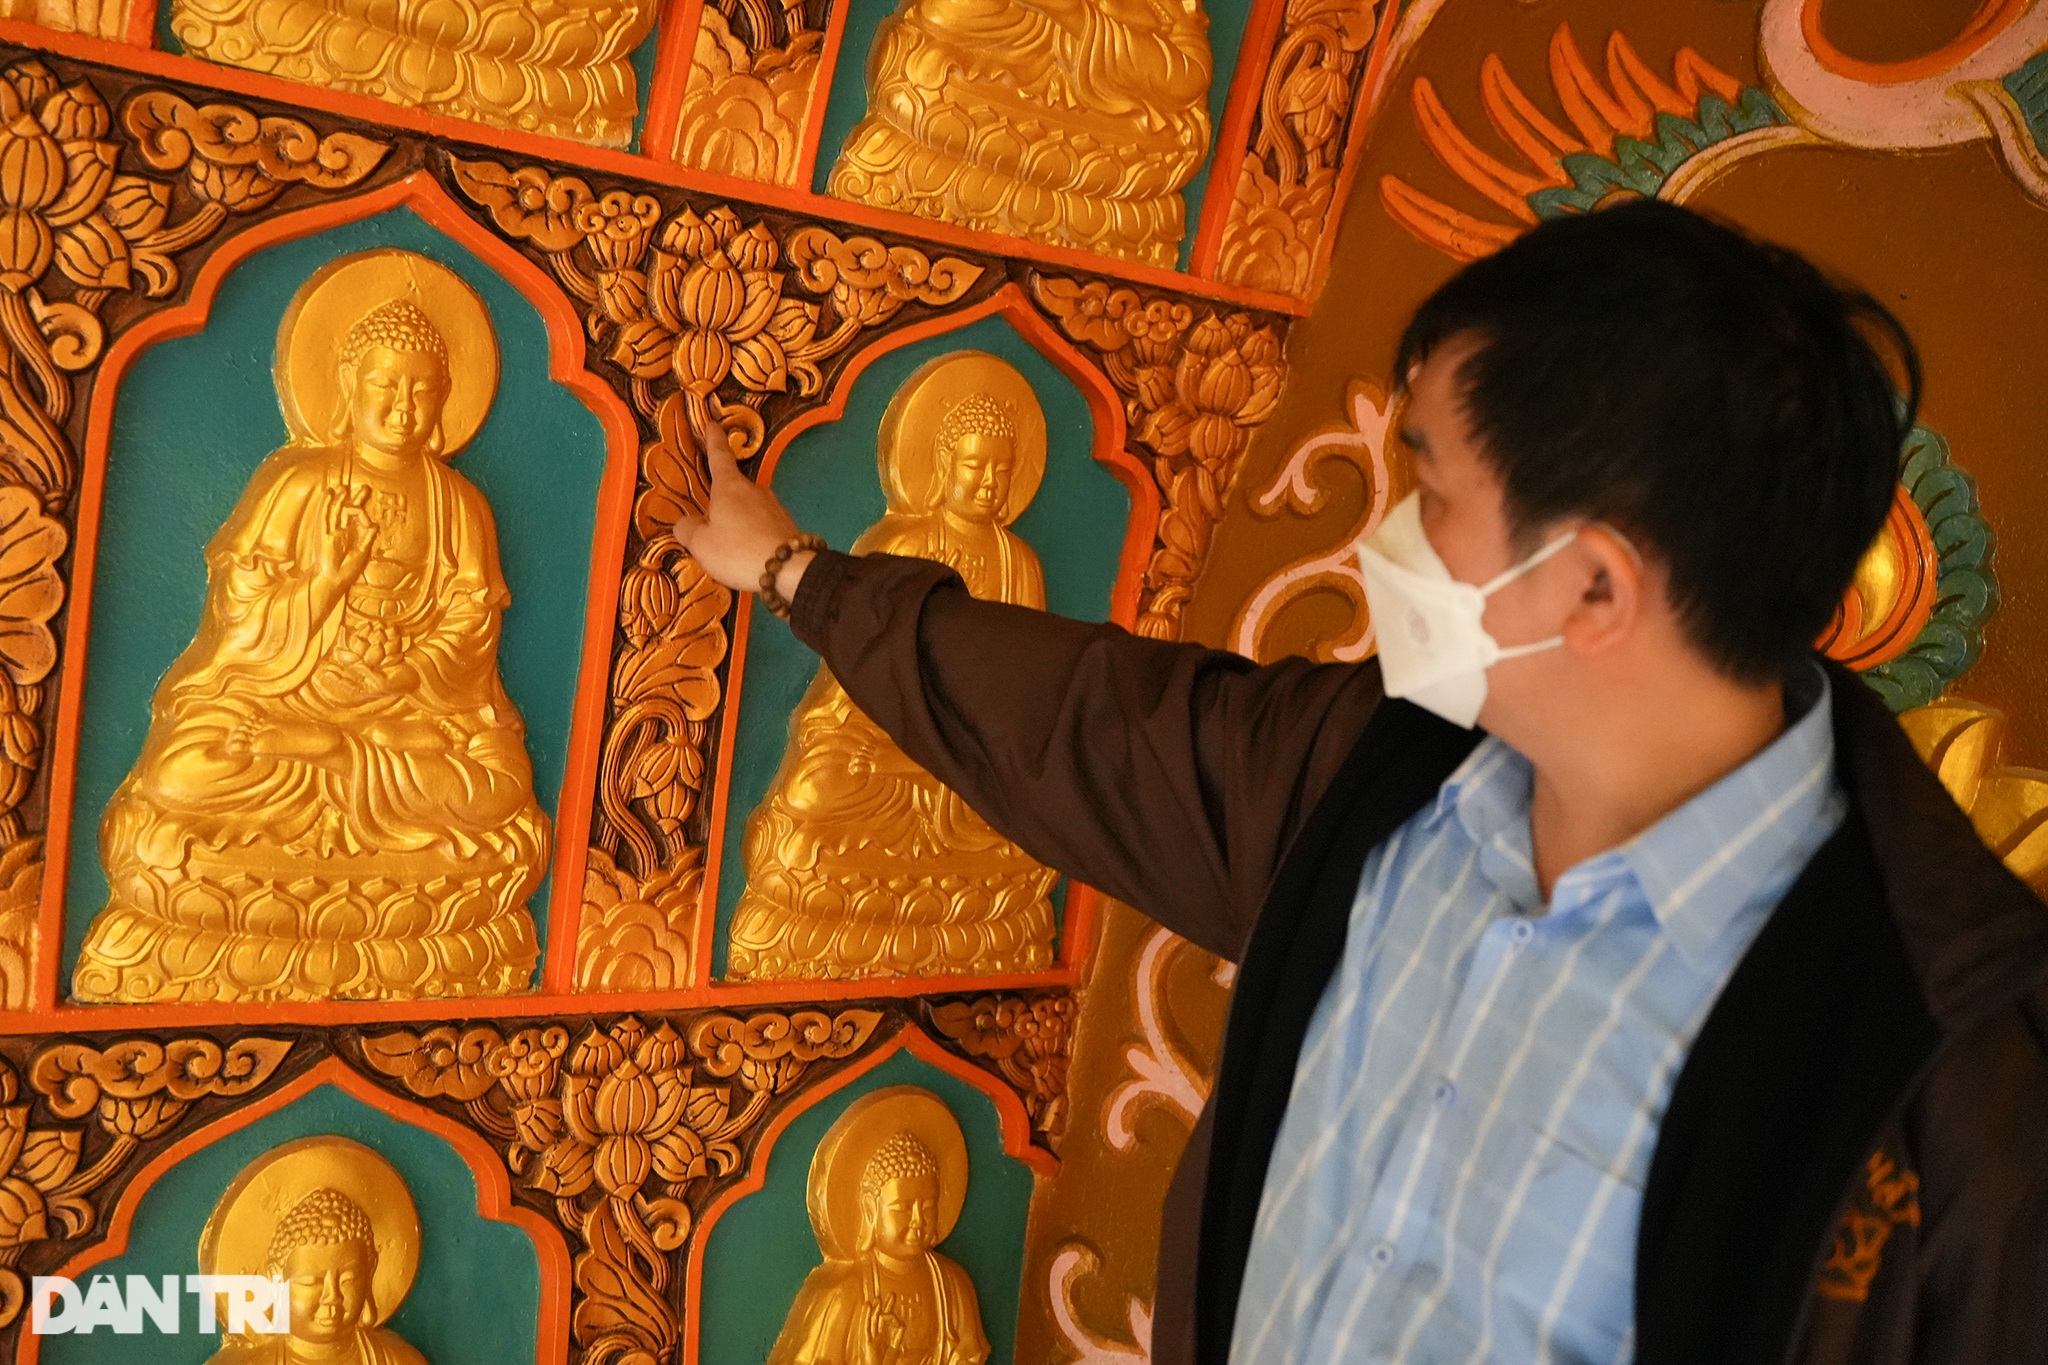 Đại tượng Phật cao nhất Đông Nam Á ở Hà Nội có trái tim ngọc nặng hơn 1 tấn - 17